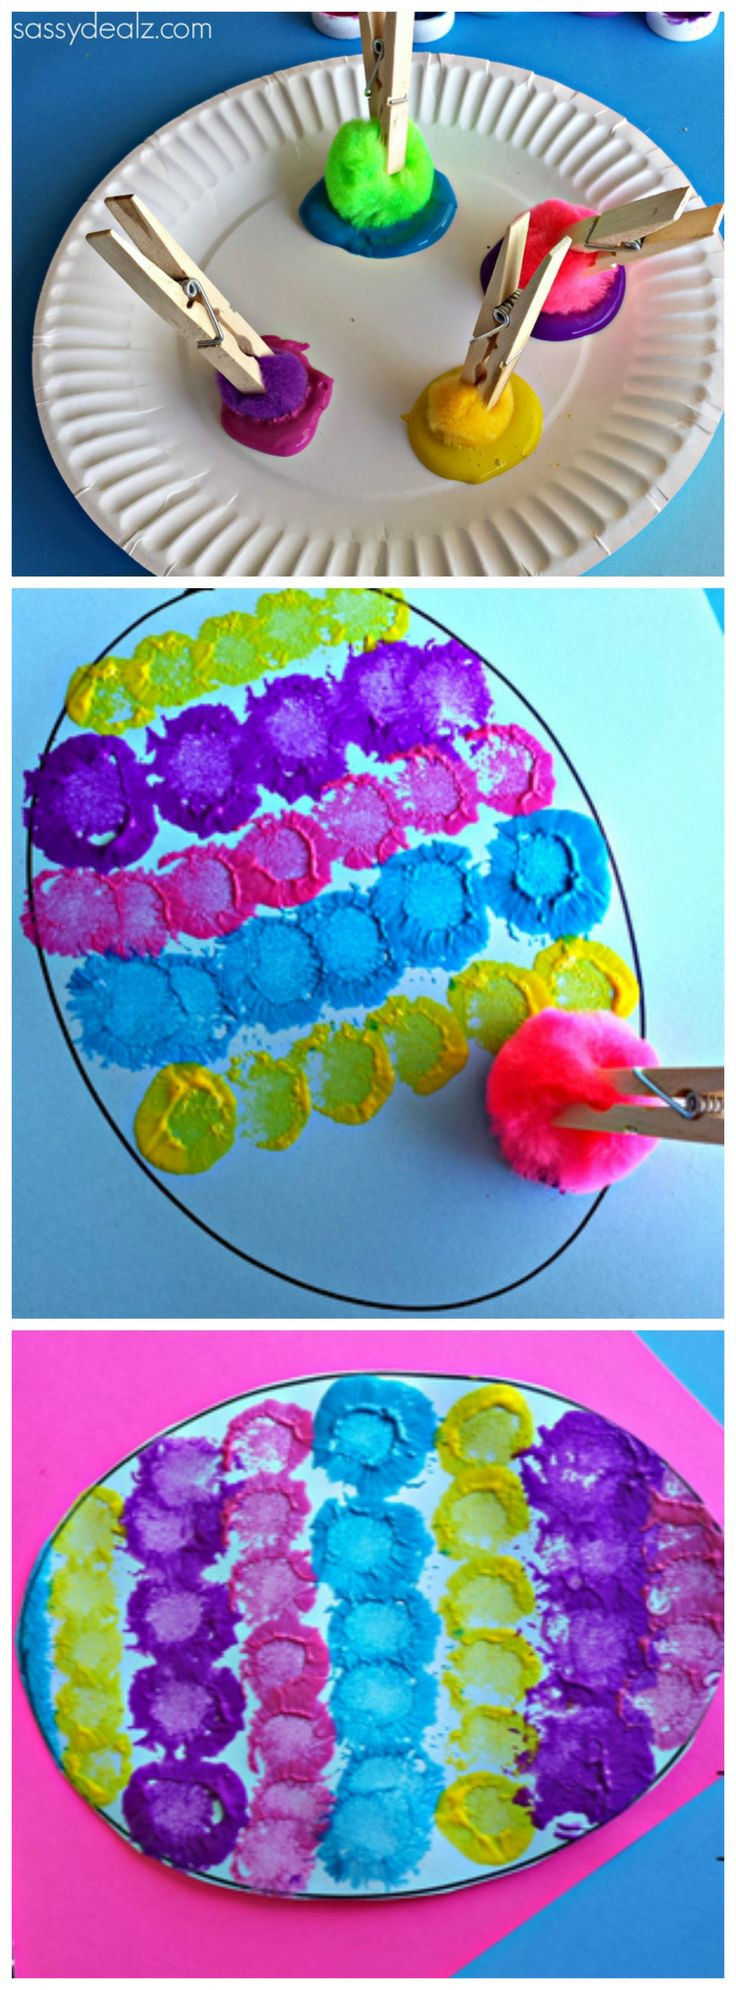 Craft Projects For Preschoolers
 15 Best Art Activities For Preschoolers Bored Art